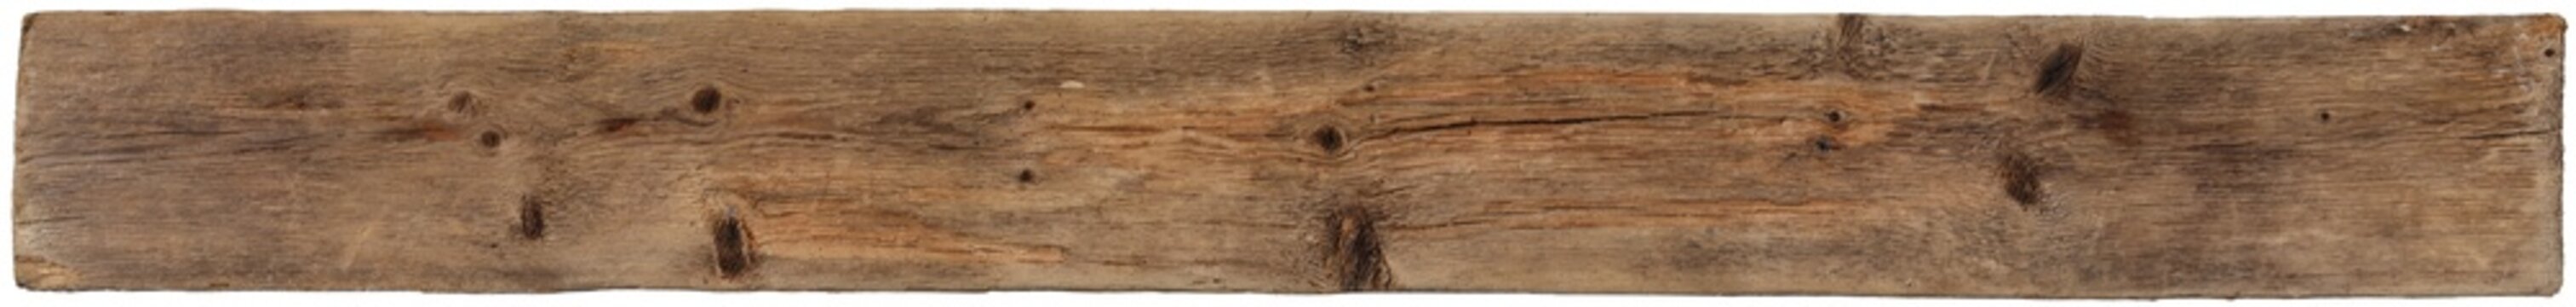 High resolution driftwood plank